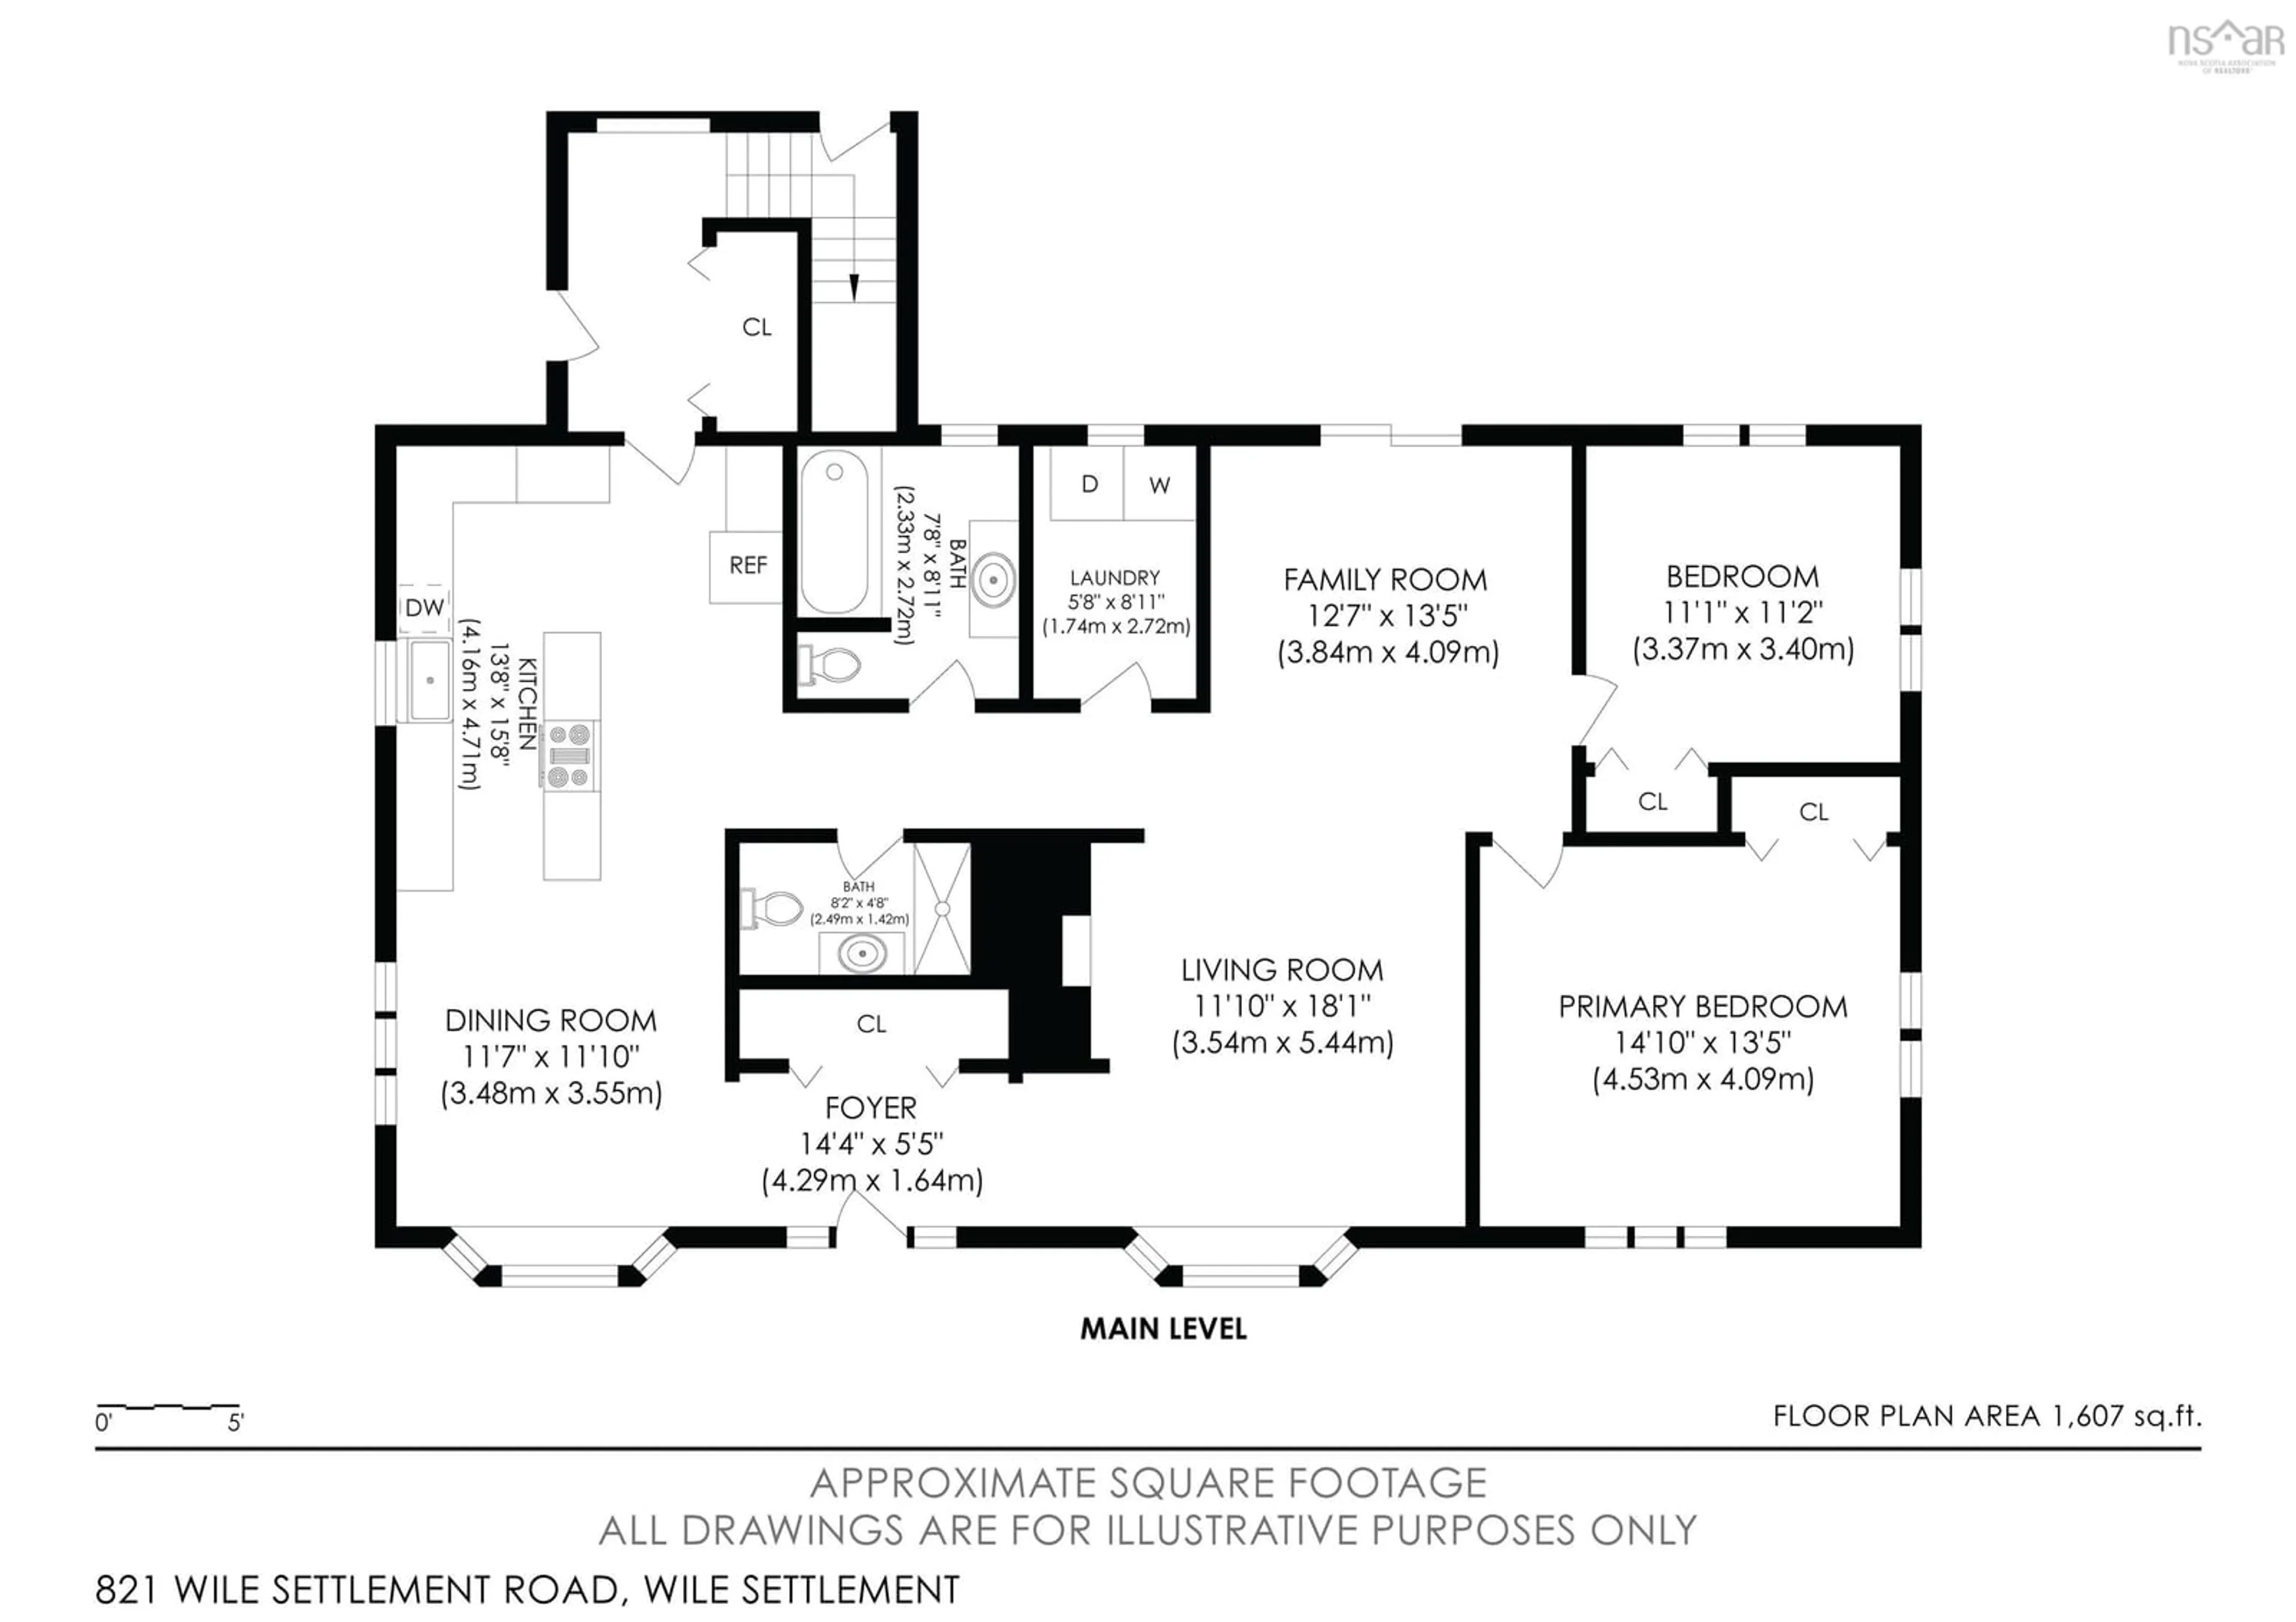 Floor plan for 821 Wile Settlement Rd, Wile Settlement Nova Scotia B0N 2T0